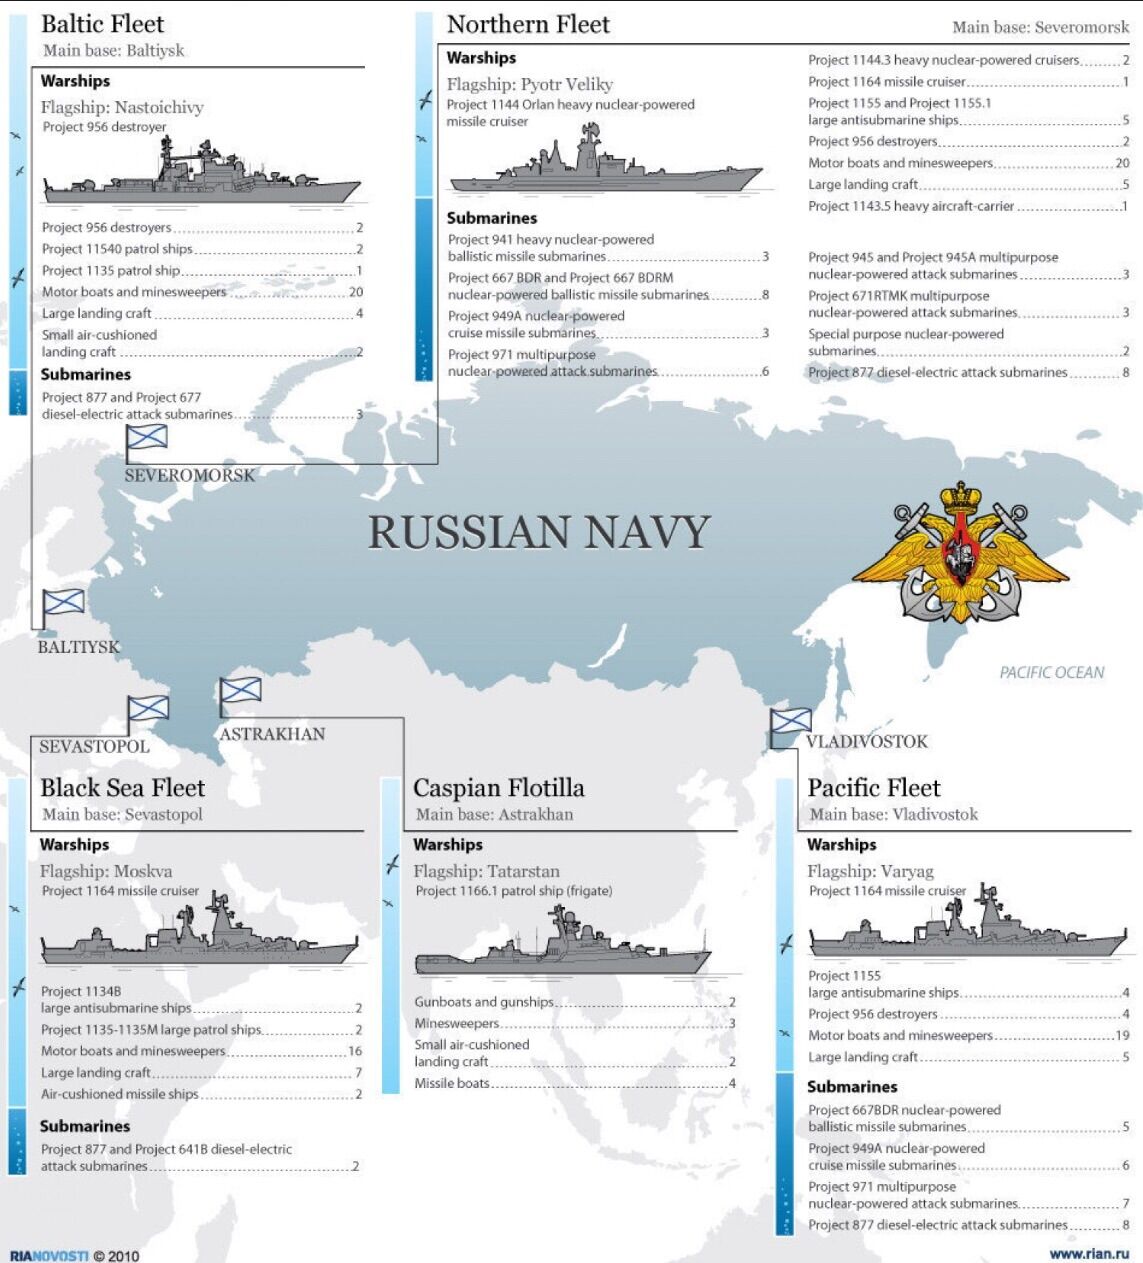 Якщо флоти США і Росії зіткнуться: що буде